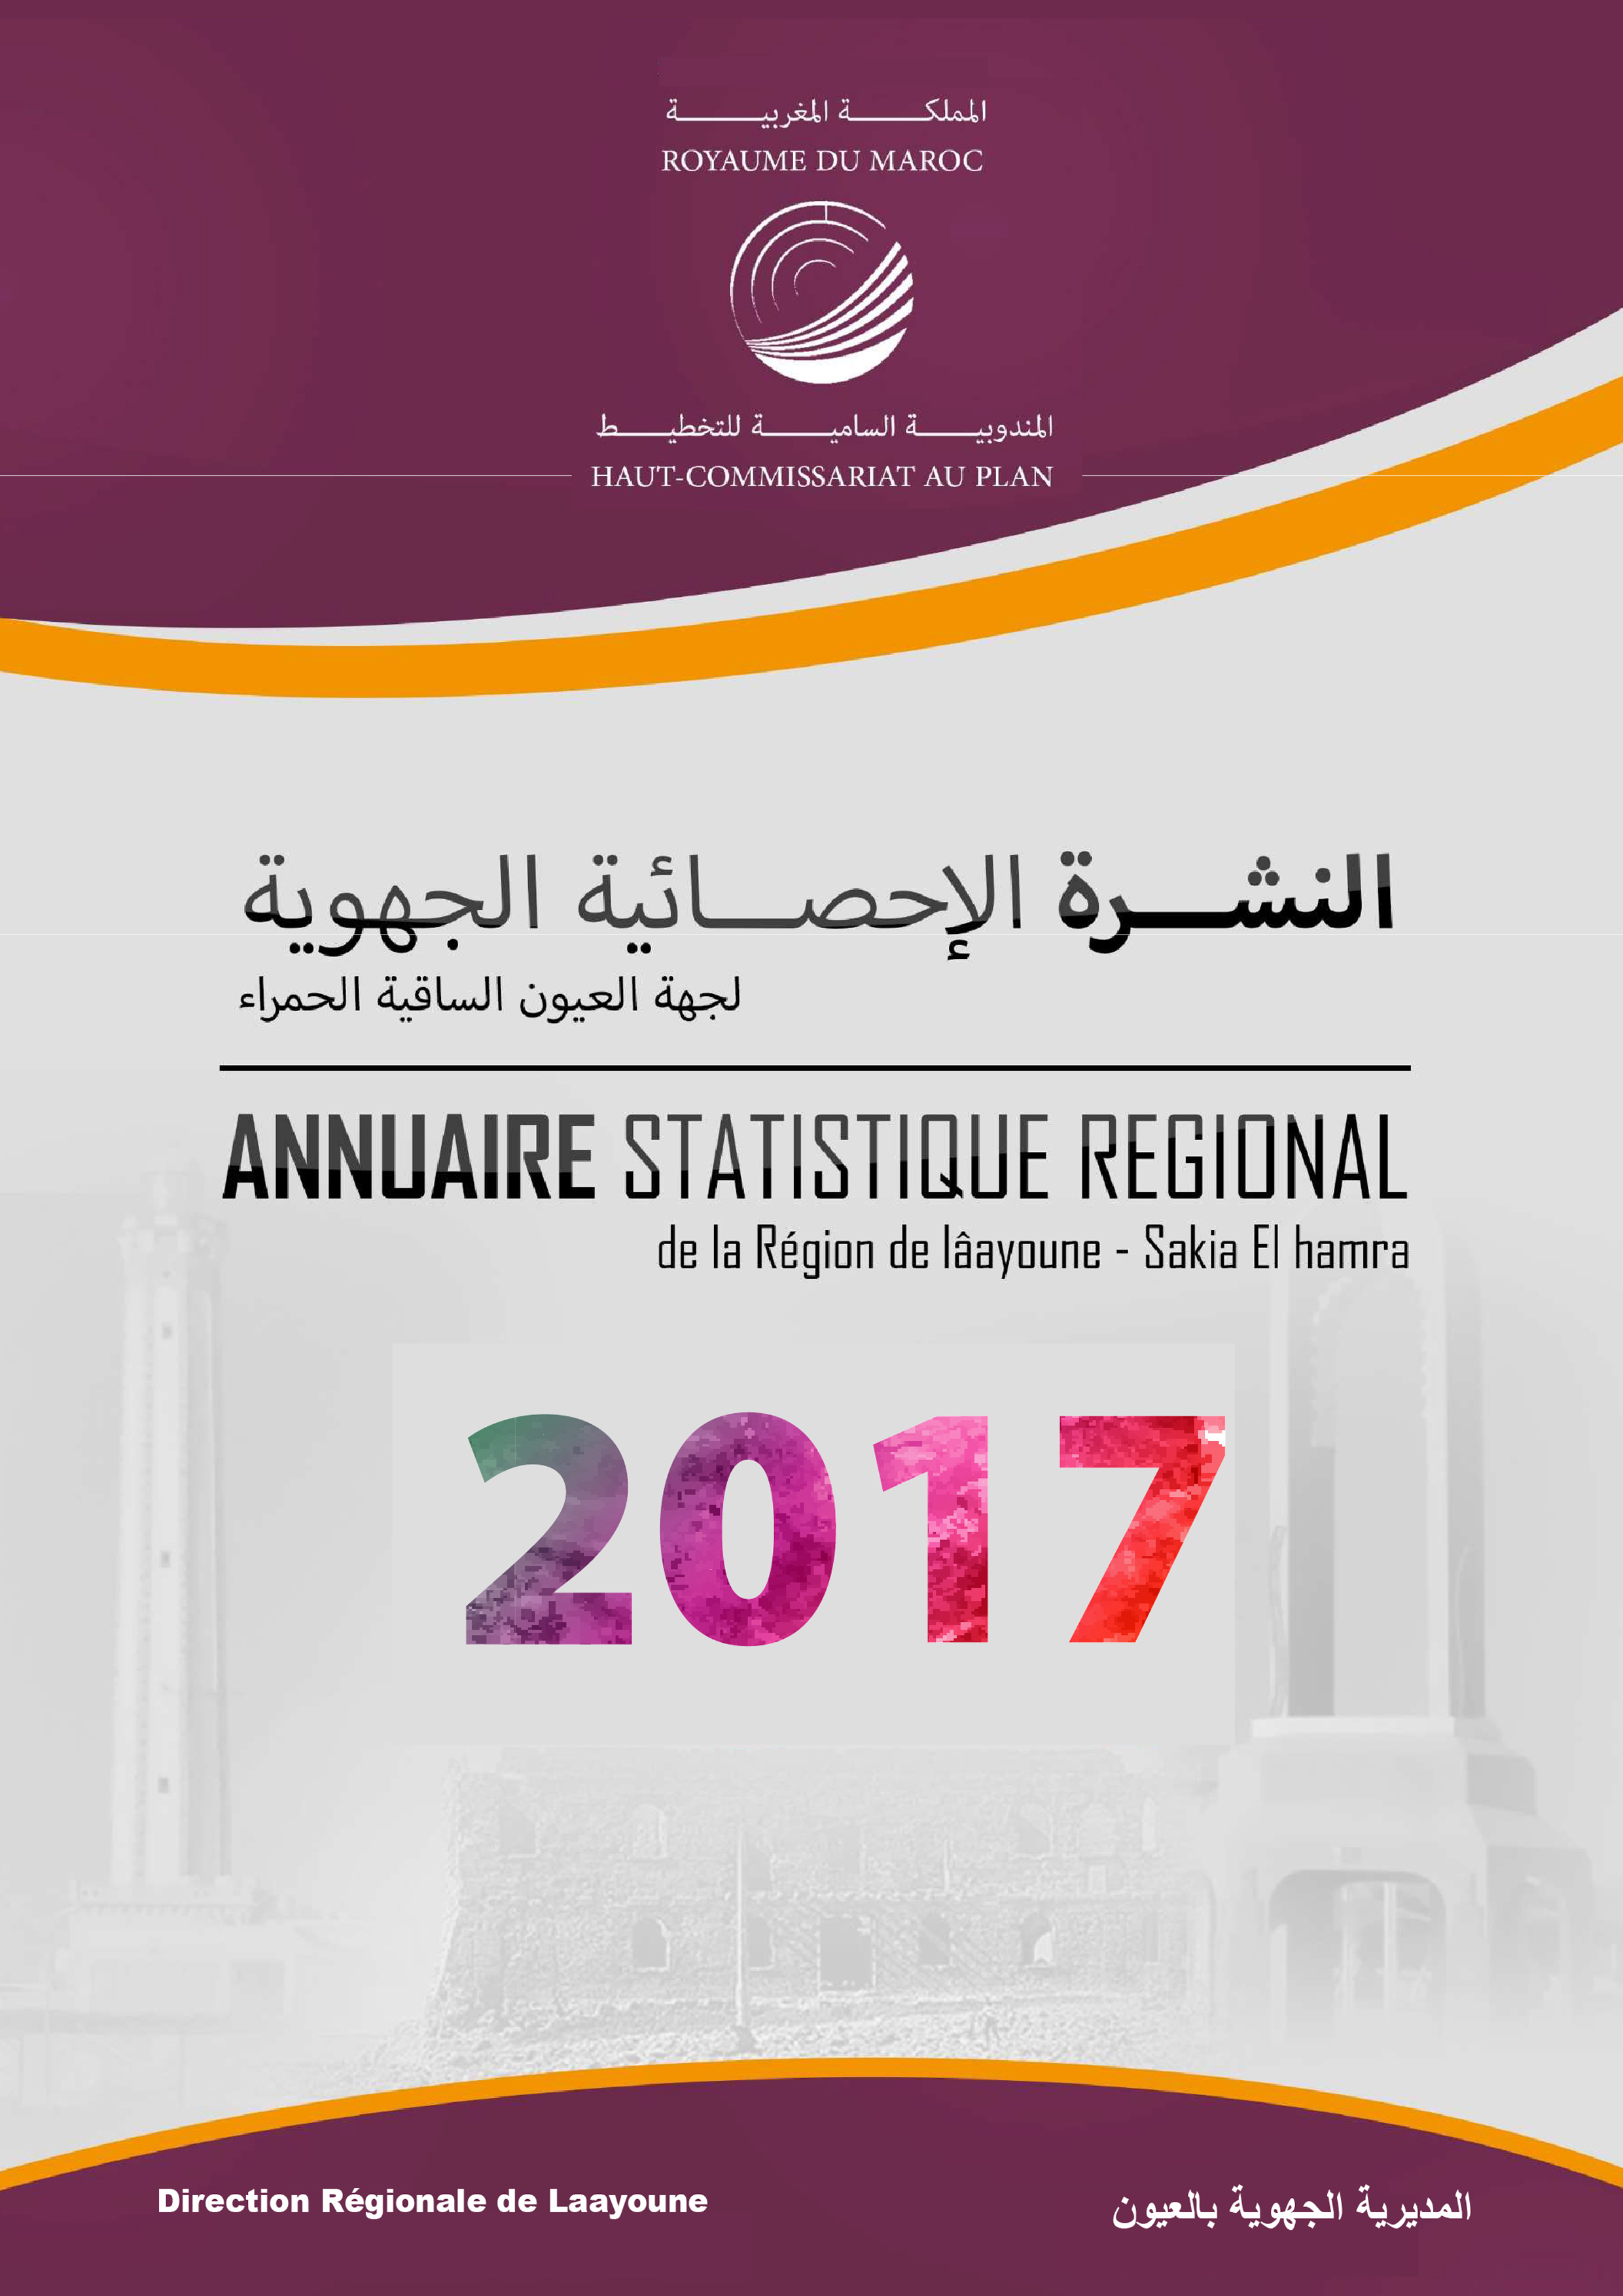 ANNUAIRE STATISTIQUE REGIONAL 2017.